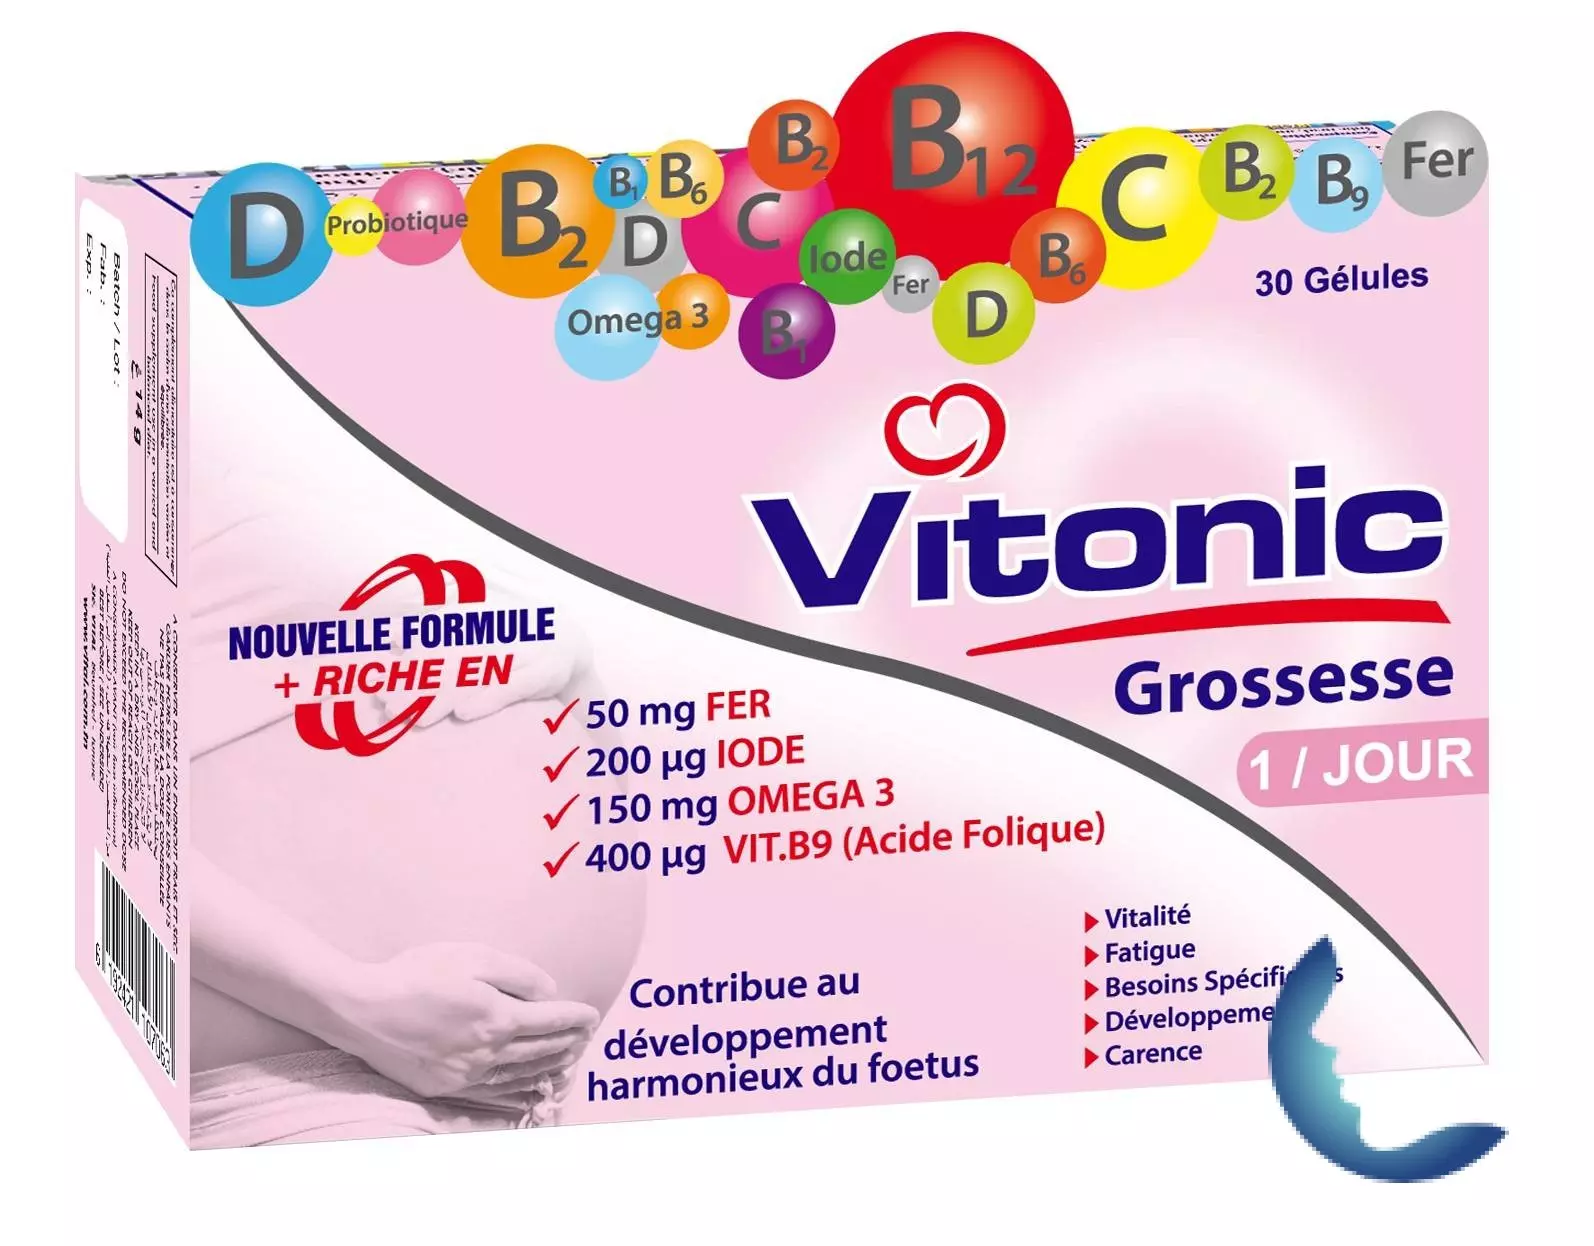 VITONIC GROSSESSE, 30 gélules